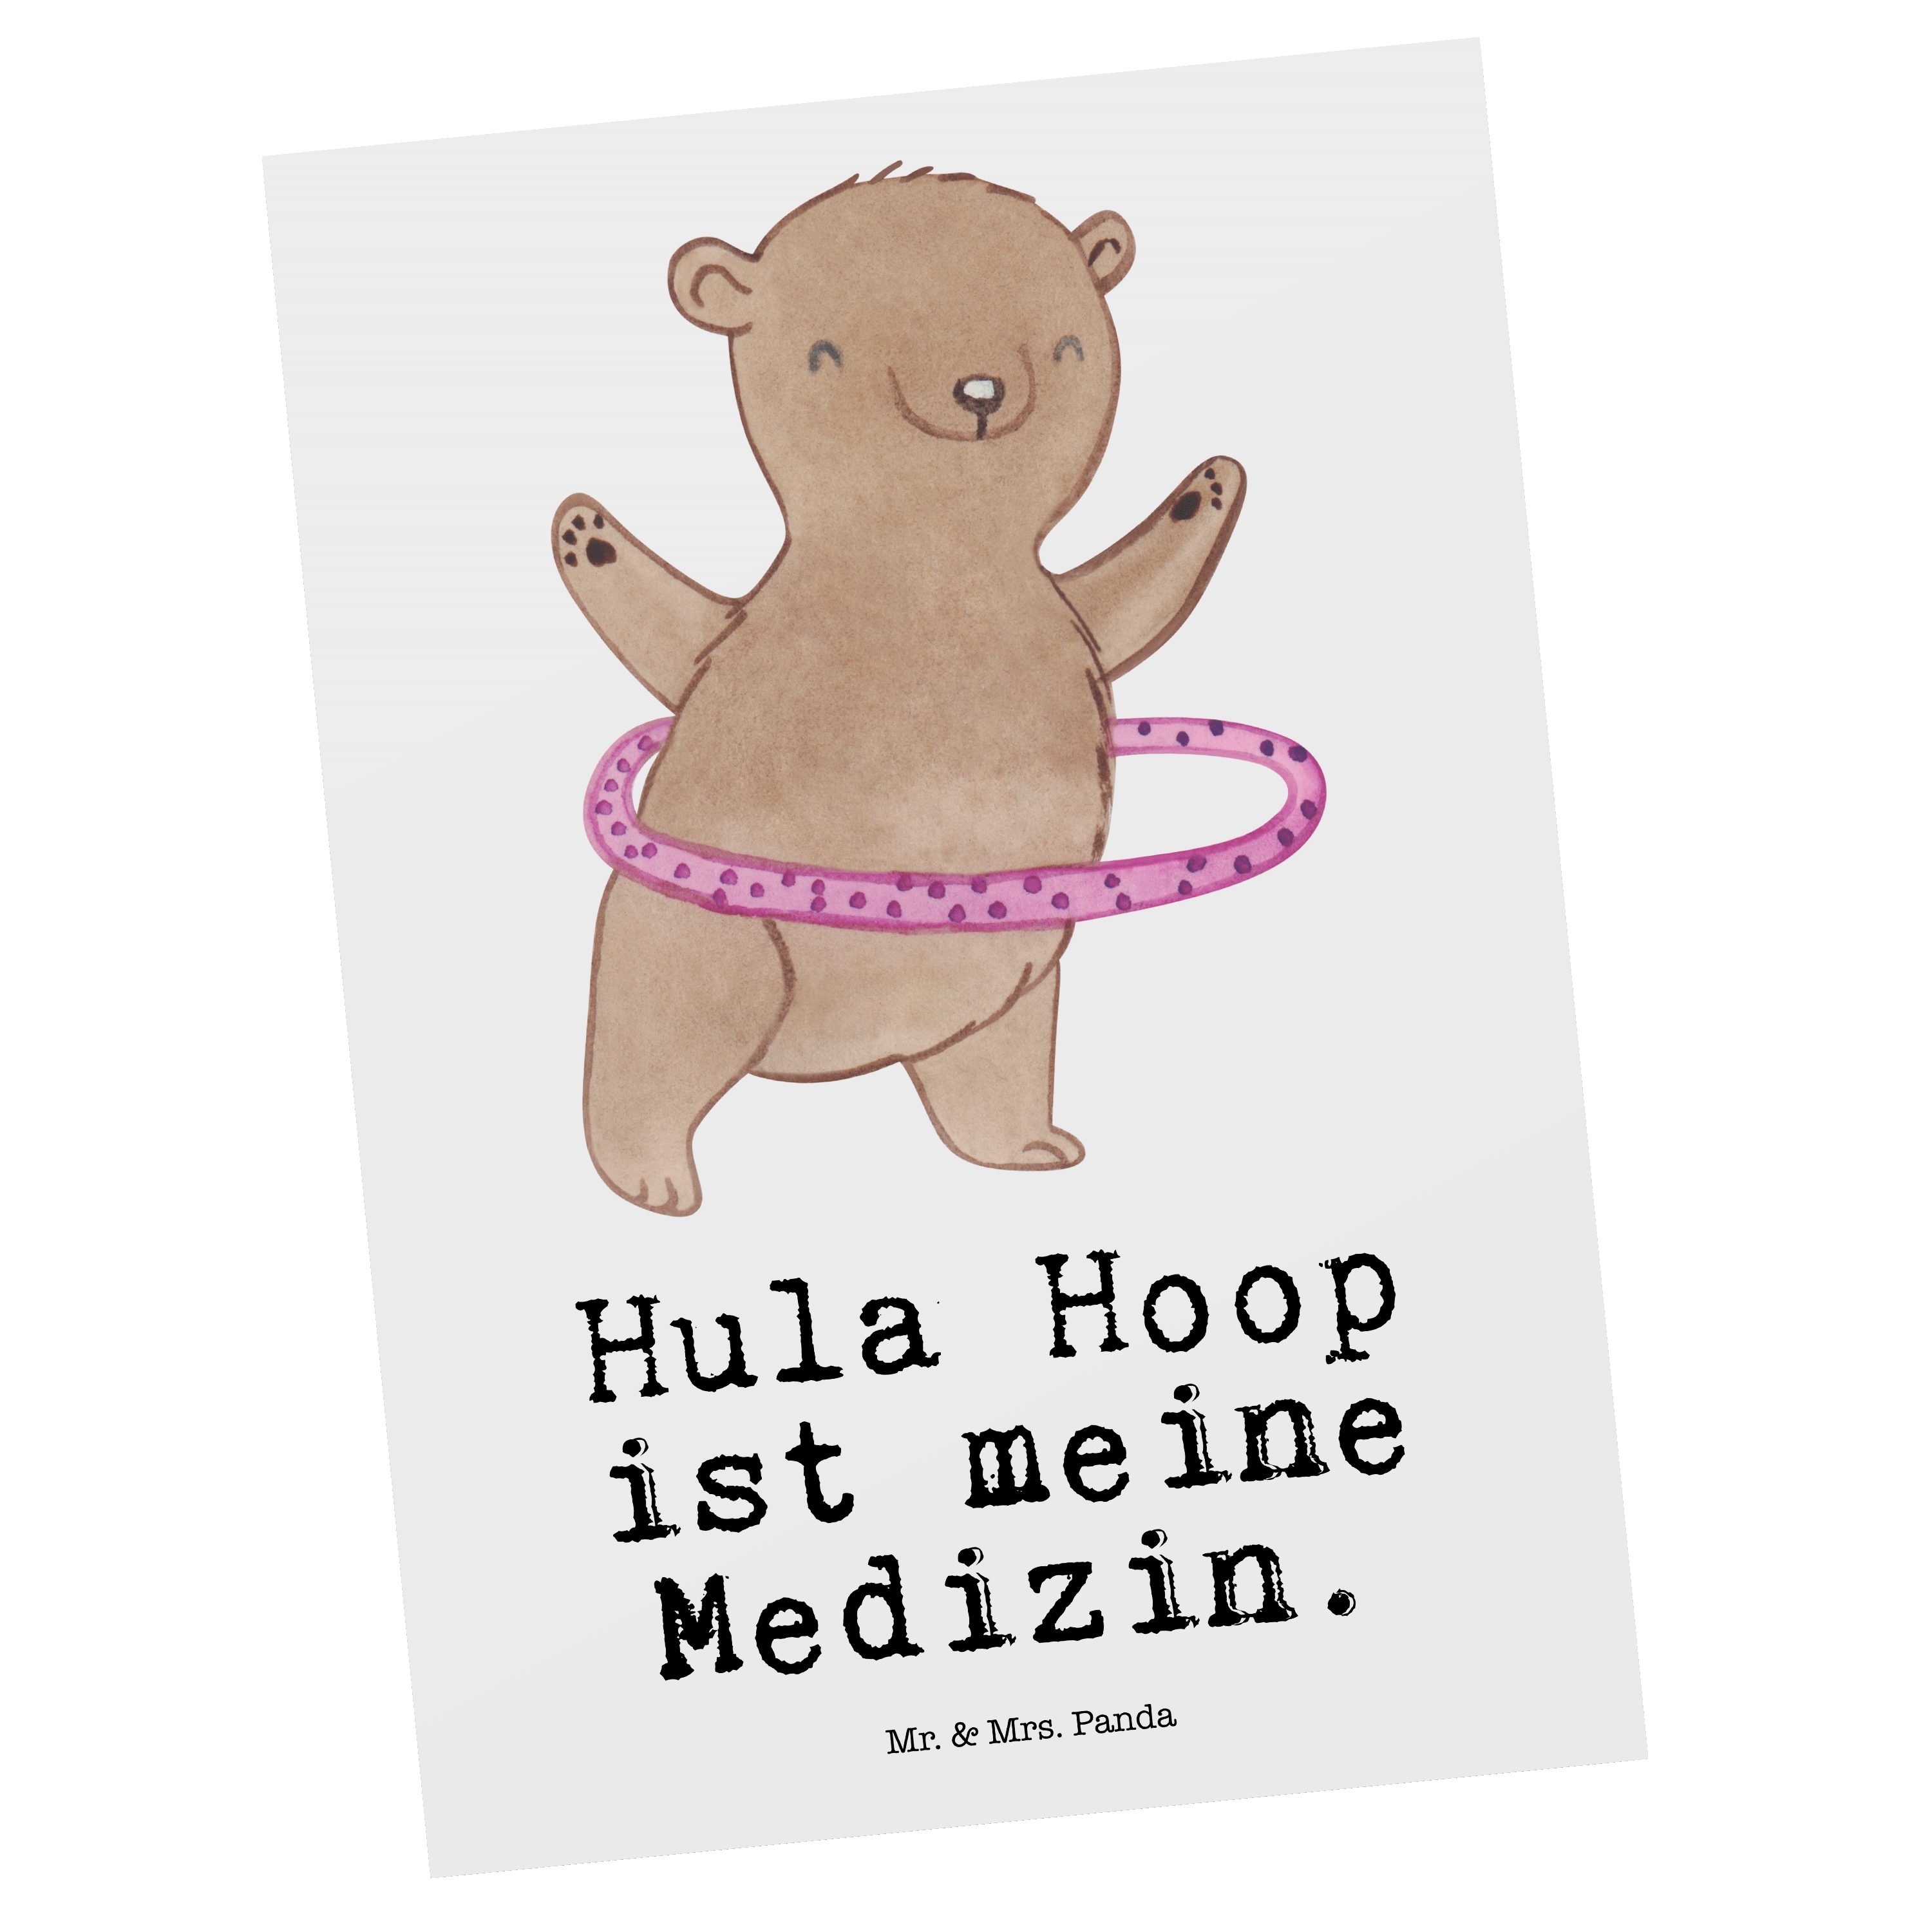 Mr. & Mrs. Panda Postkarte Bär Hula Hoop Medizin - Weiß - Geschenk, Fitness, Training, Geschenkk